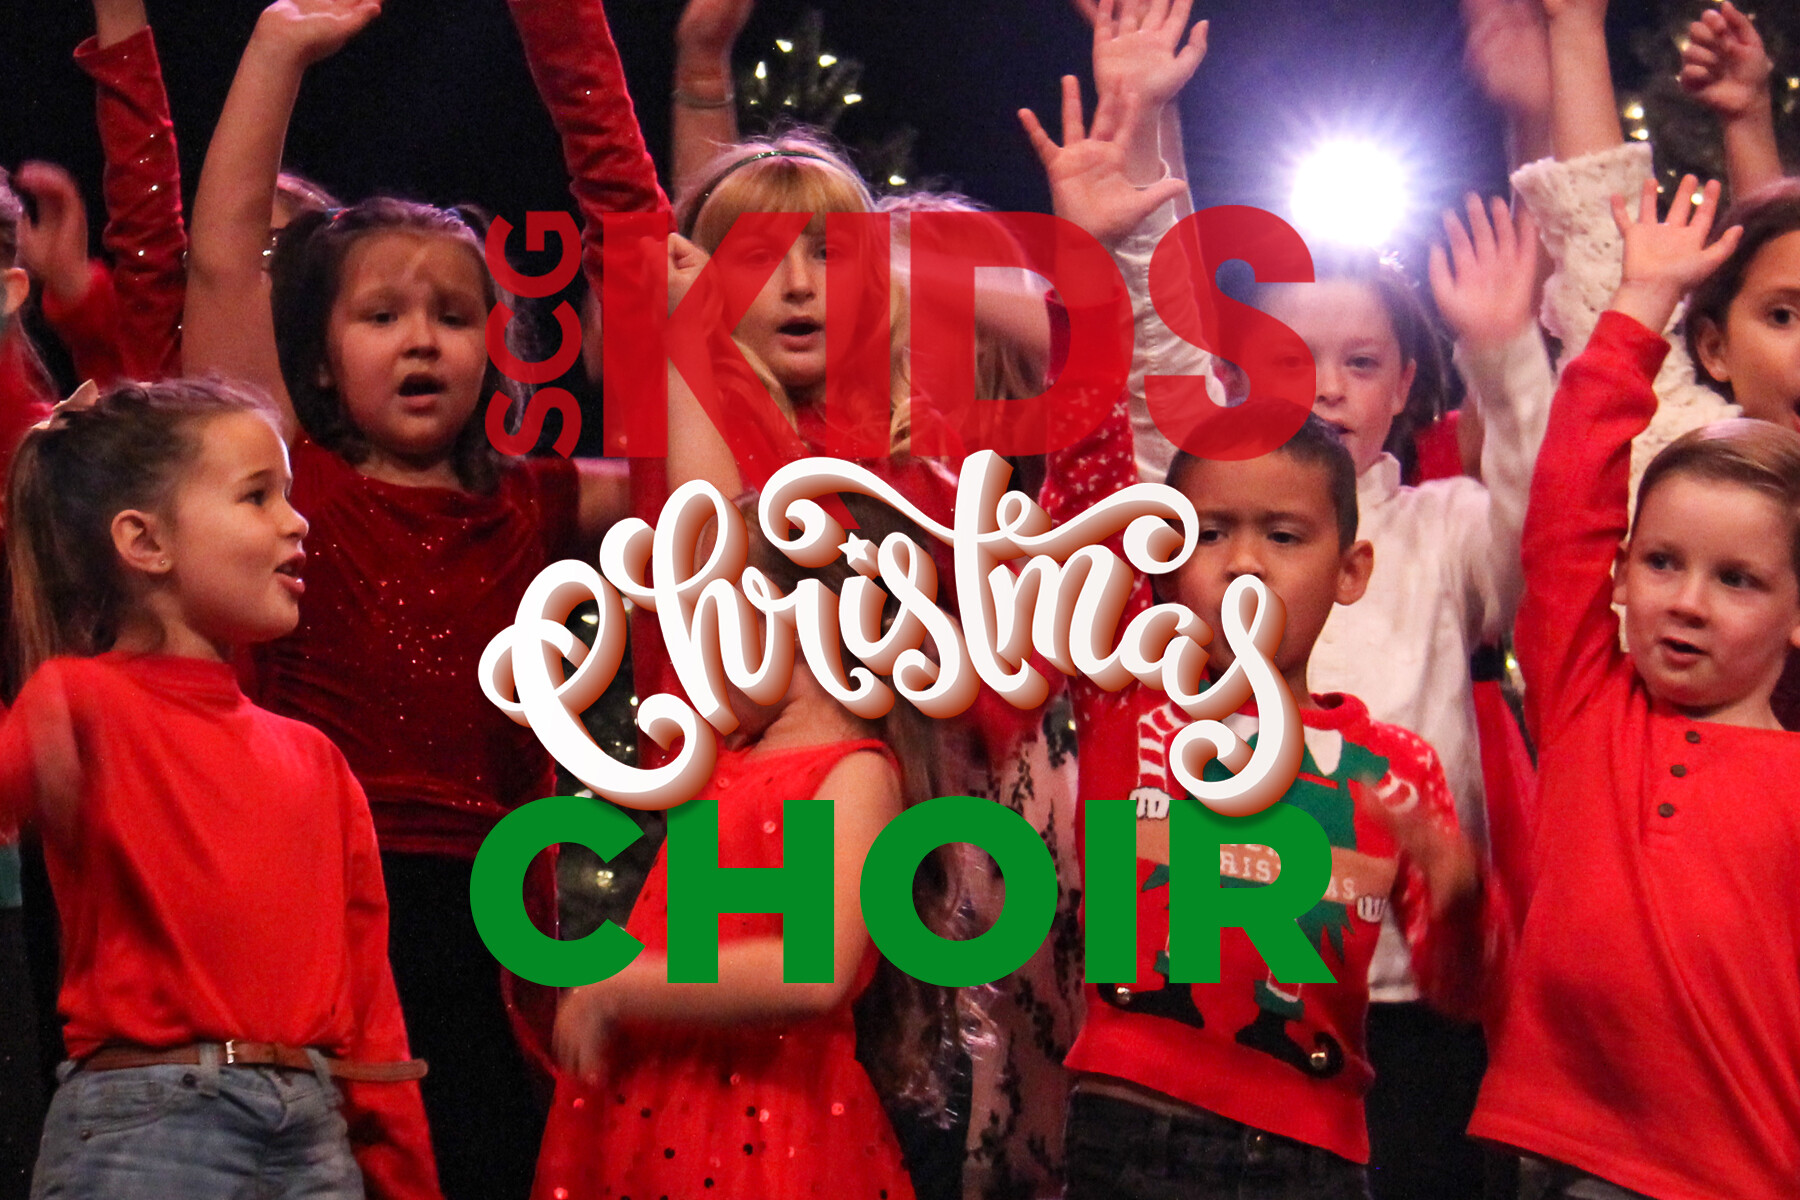 SCG Kids Christmas Choir